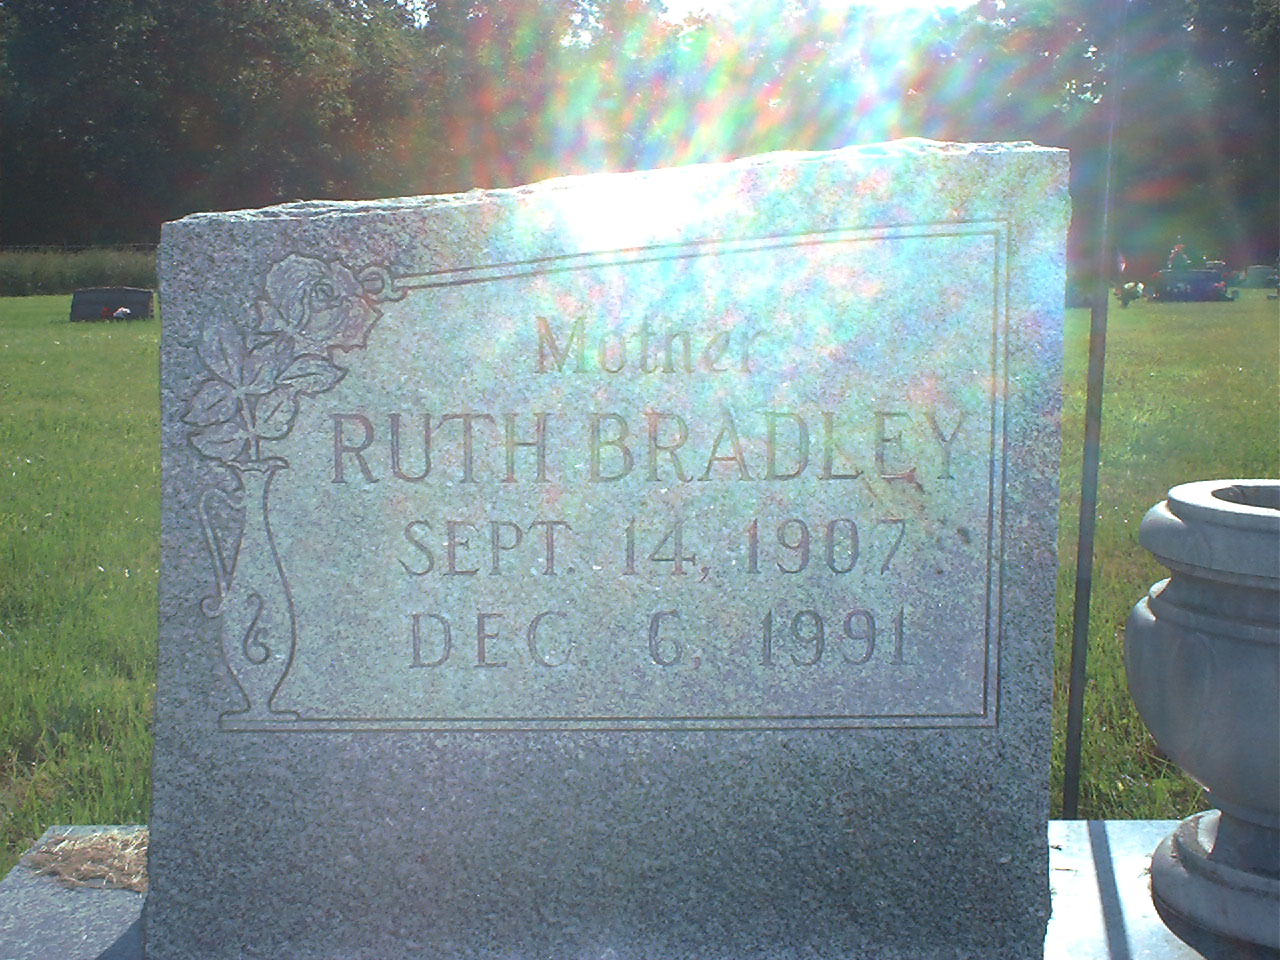 Ruth Bradley Batey headstone